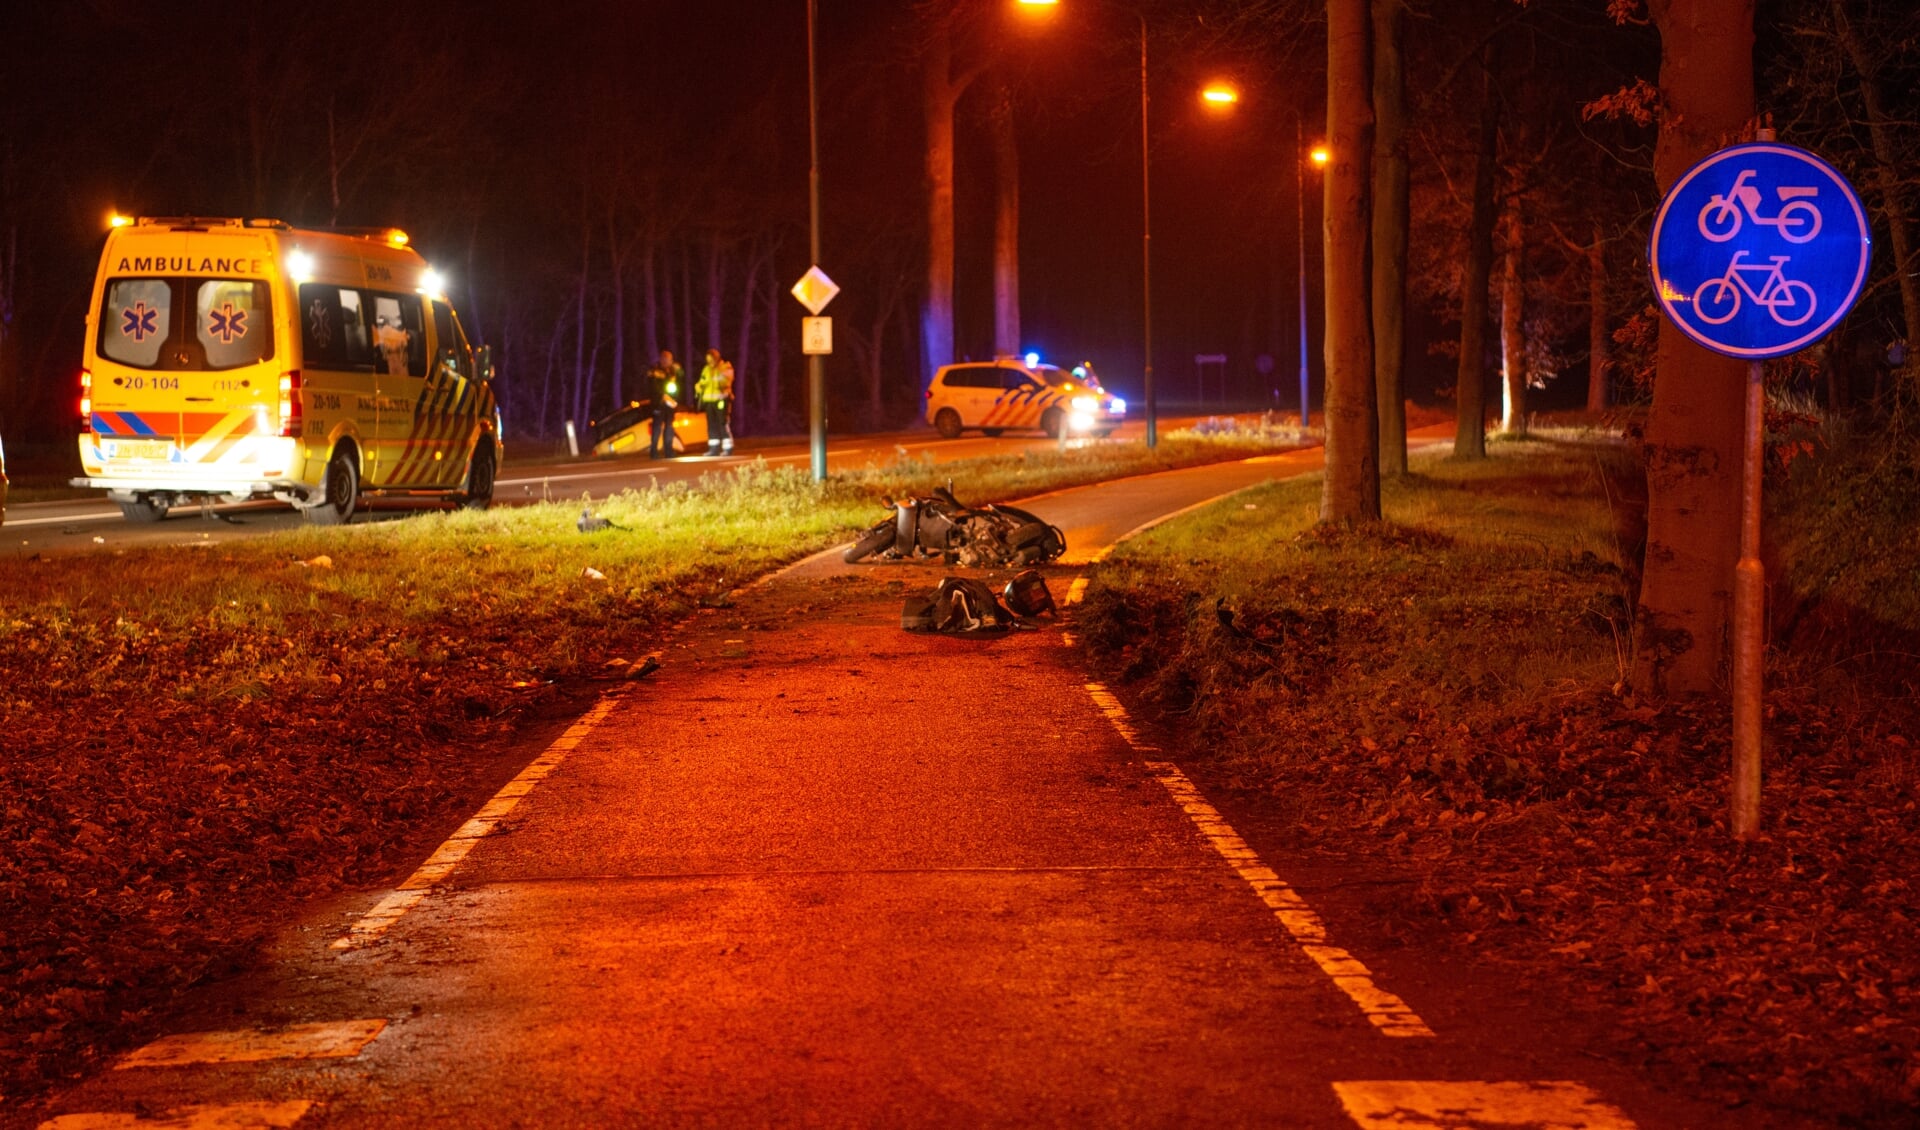 Ernstig ongeval scooter en auto op Putseweg